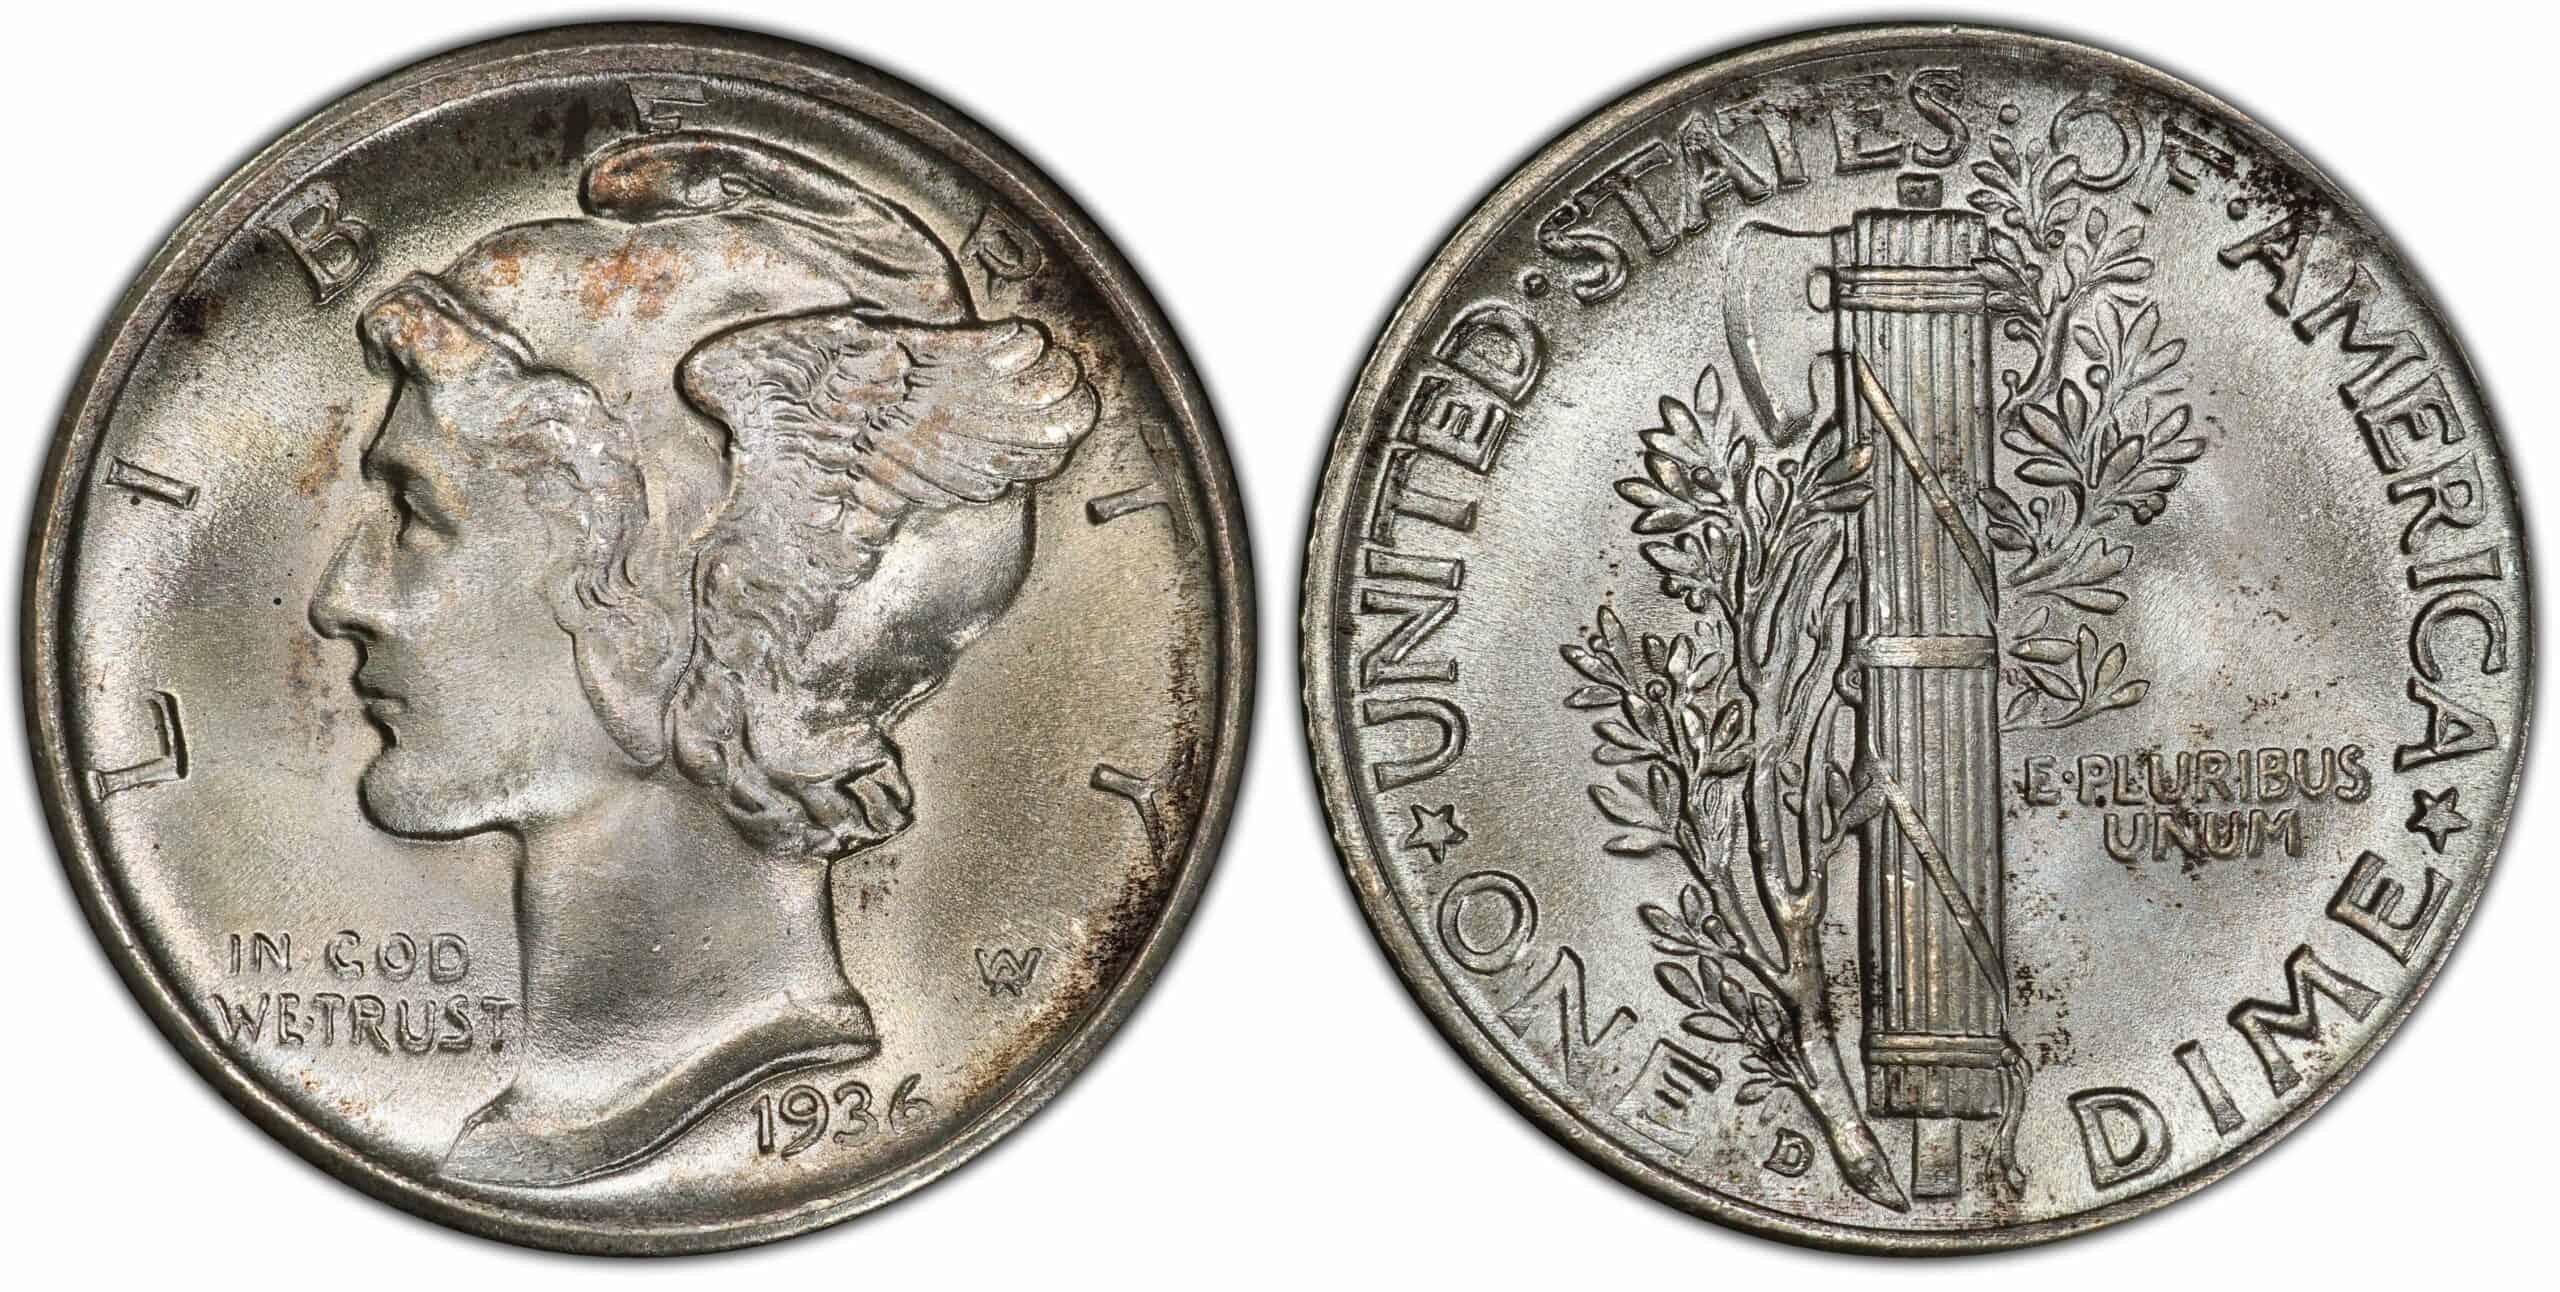 1936 D Mint Mark Dime Value